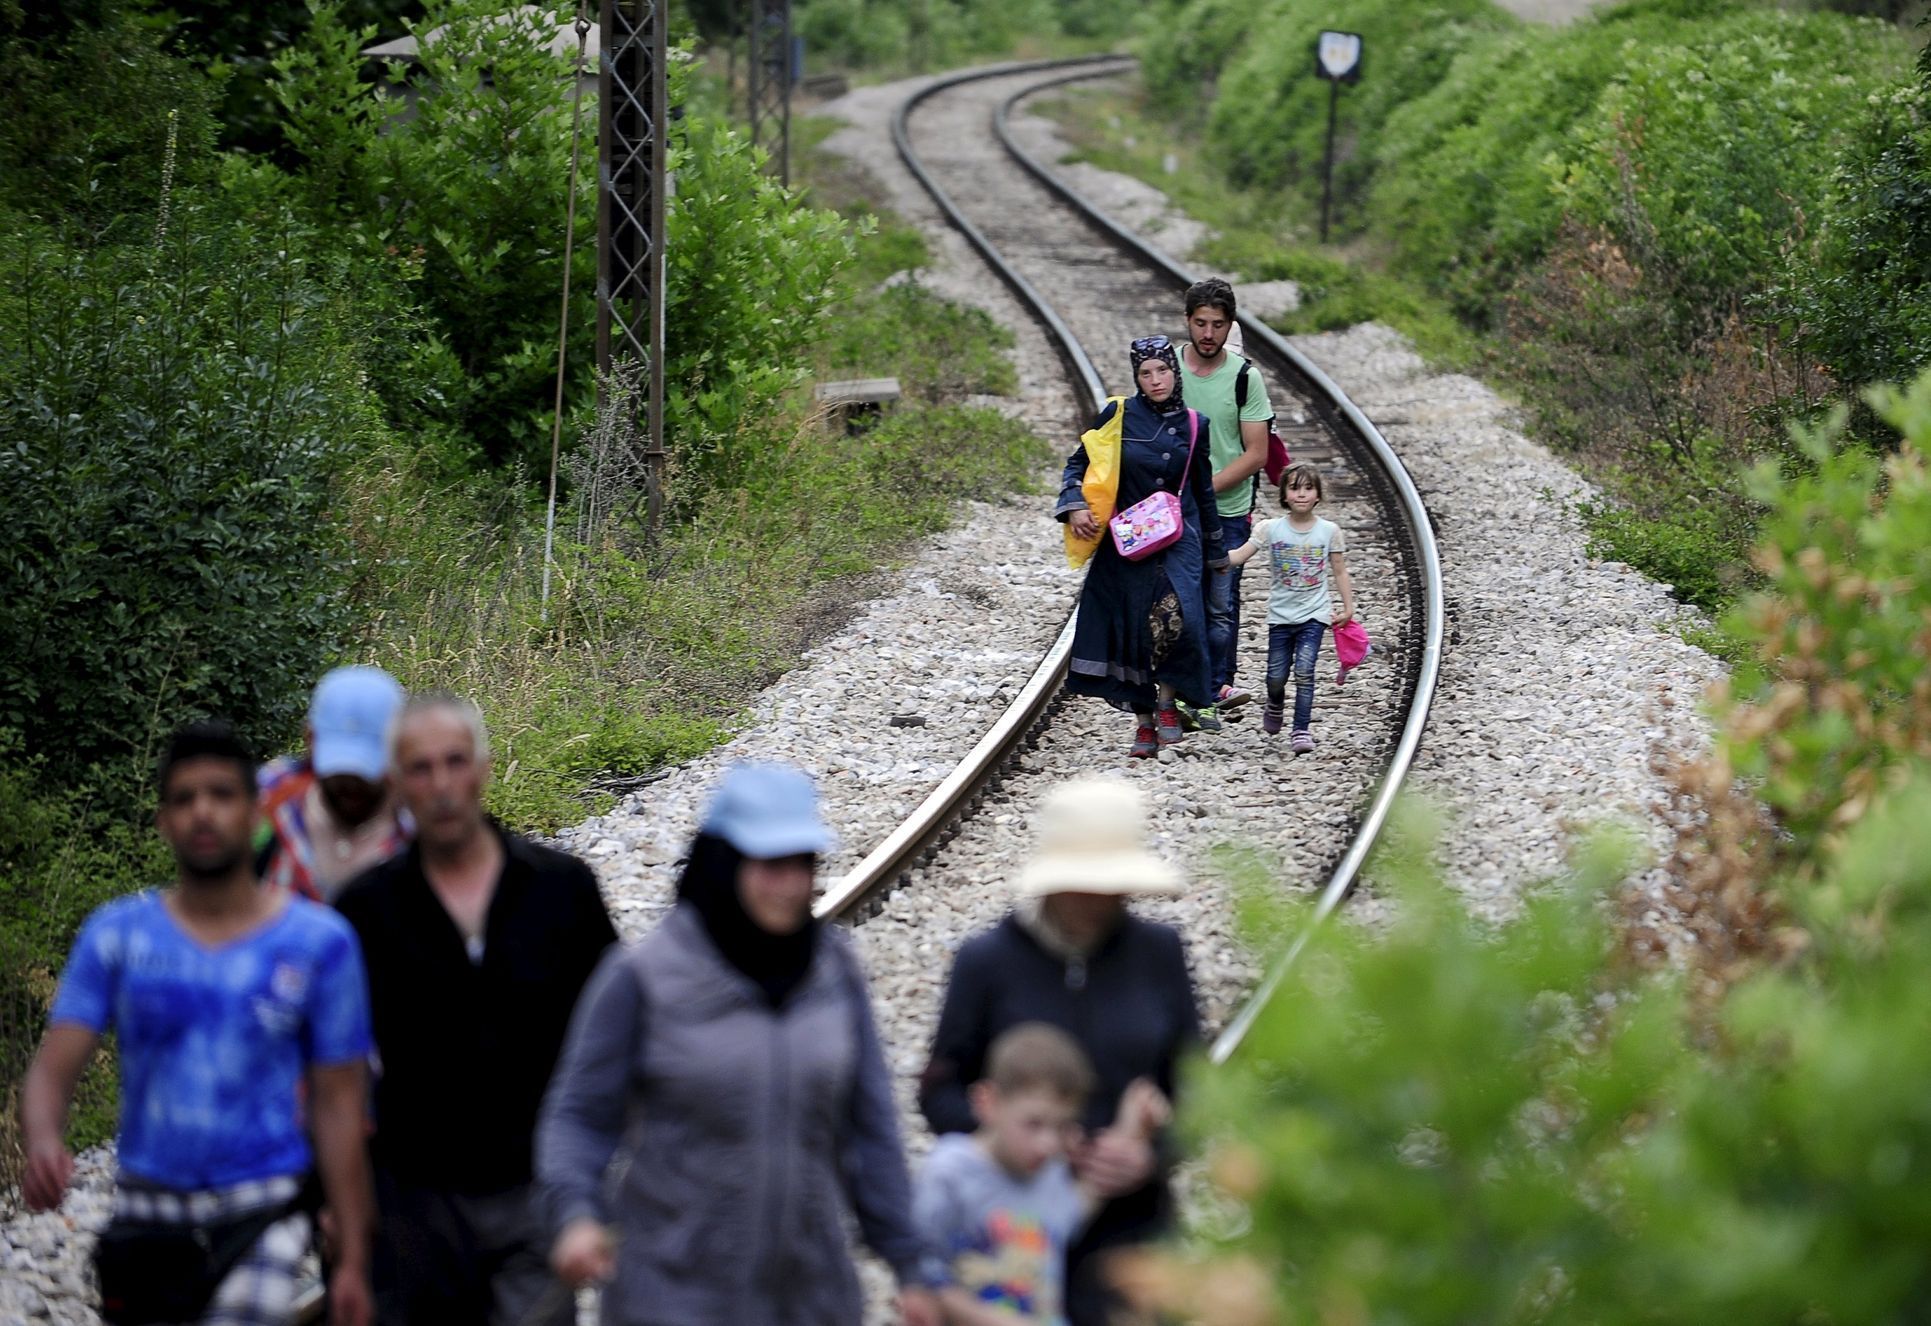 Makedonie - Cesta do Evropy - uprchlíci